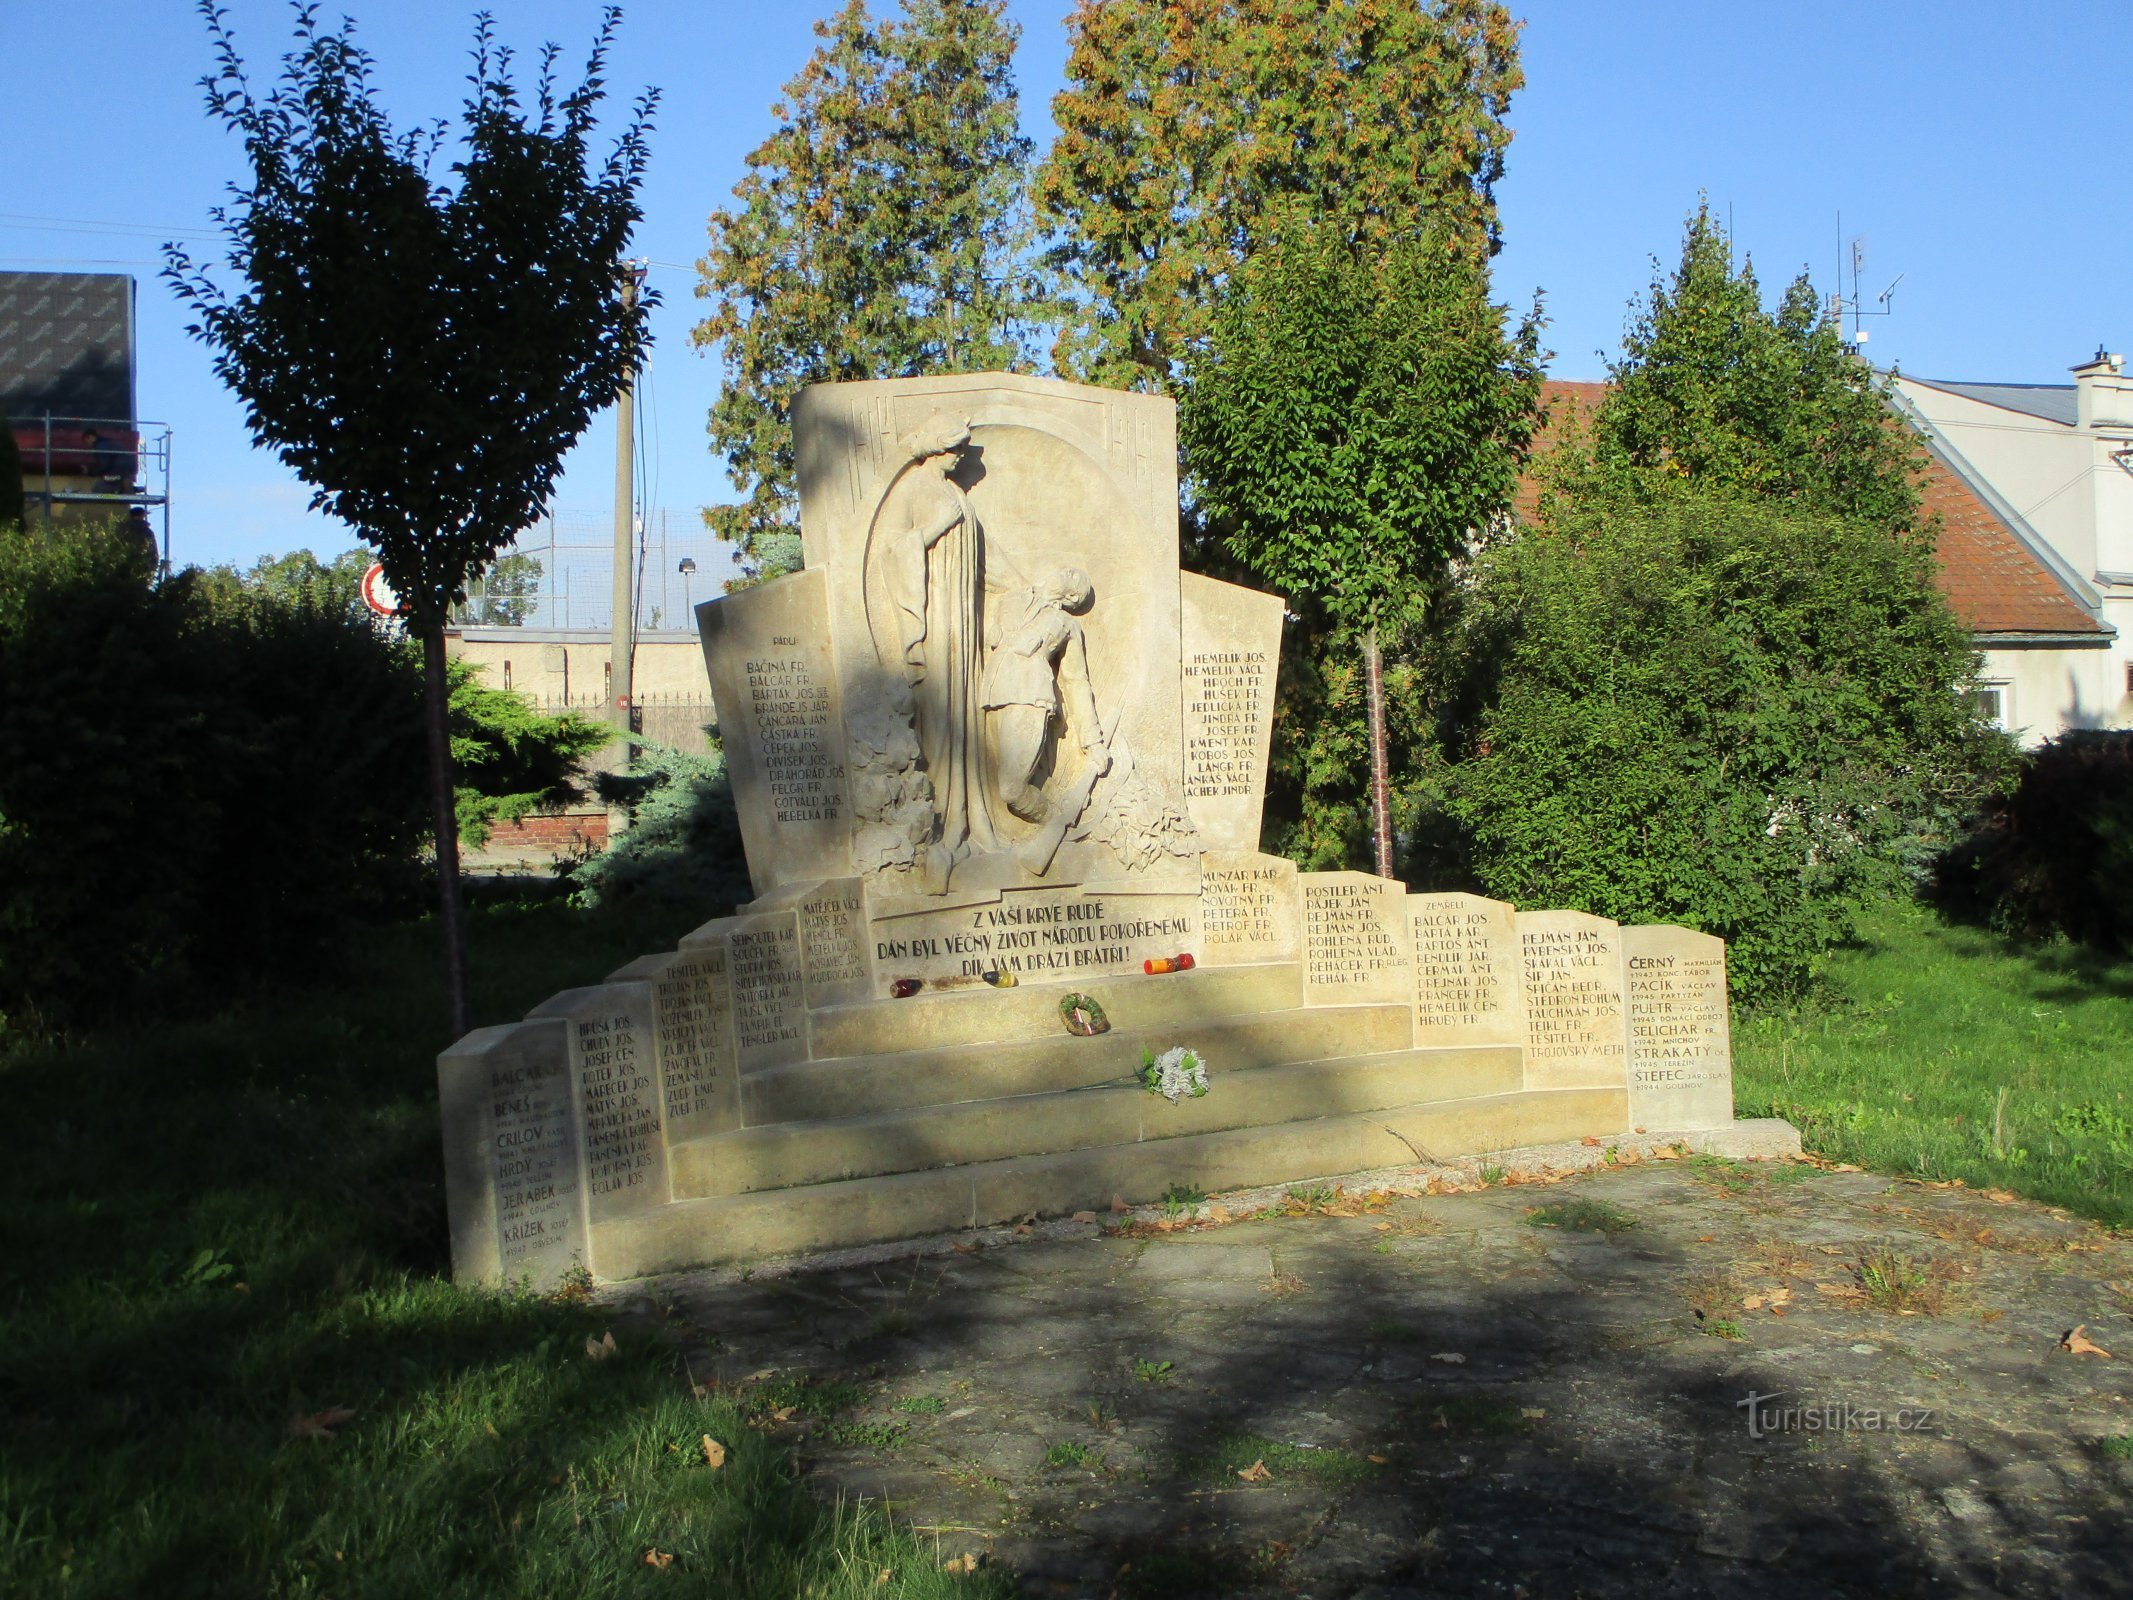 Đài tưởng niệm những người đã chết trong Chiến tranh thế giới thứ nhất ở Nové Hradec Králové (Hradec Králové, 1/18.9.2019/XNUMX)